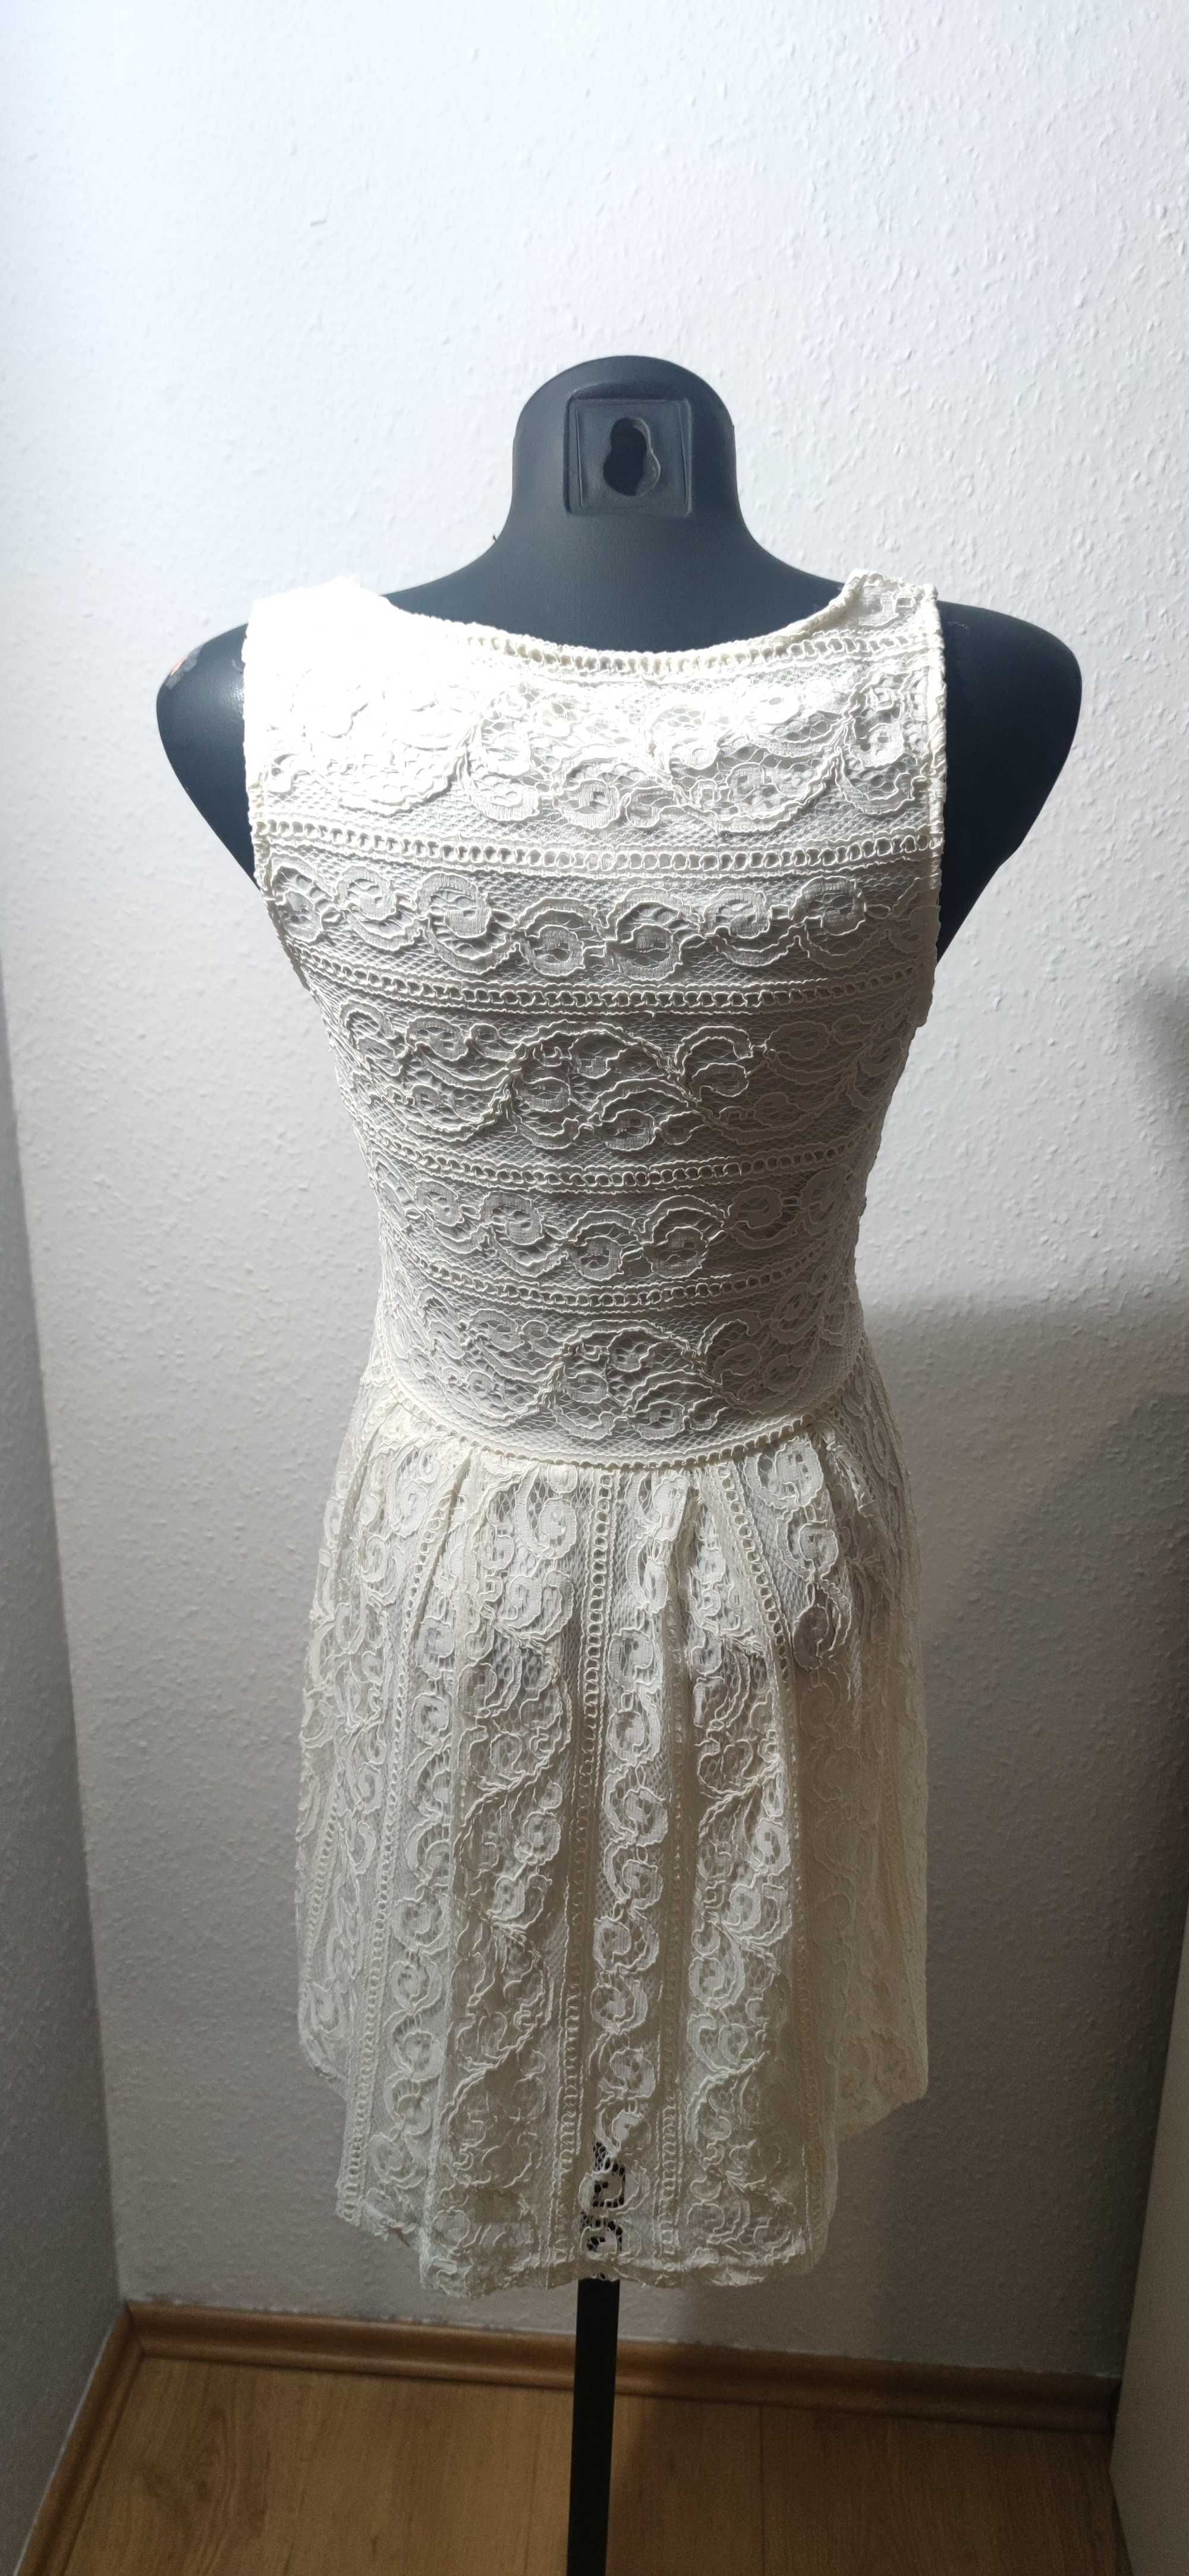 Sukienka biała koronkowa